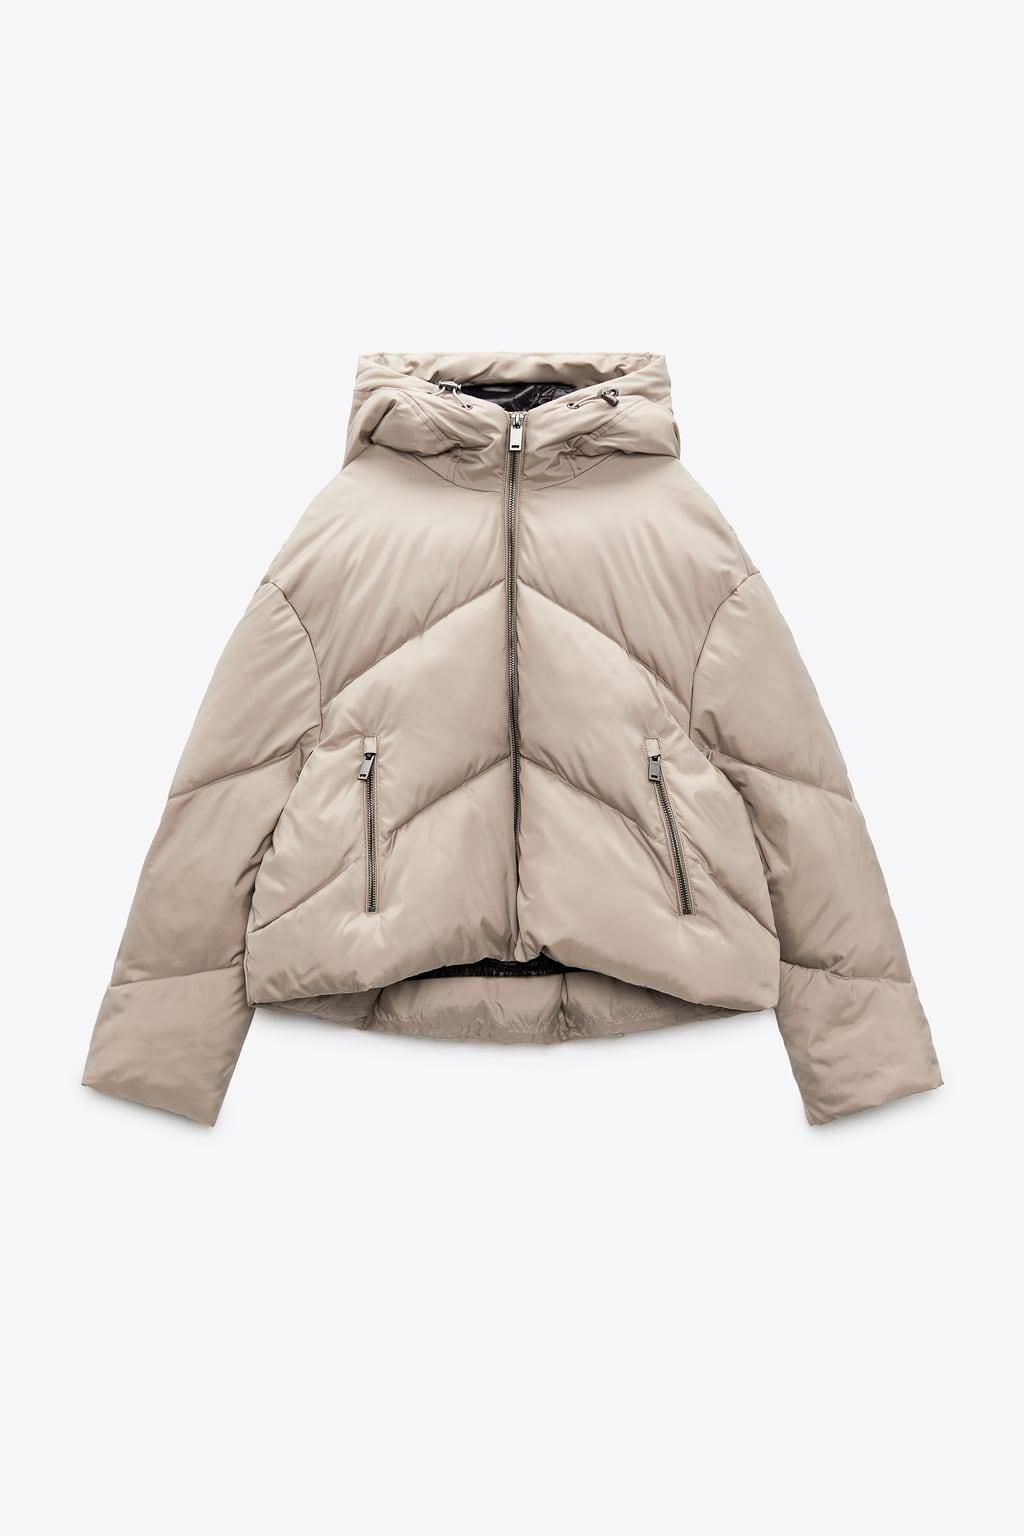 Zara short puffer jacket